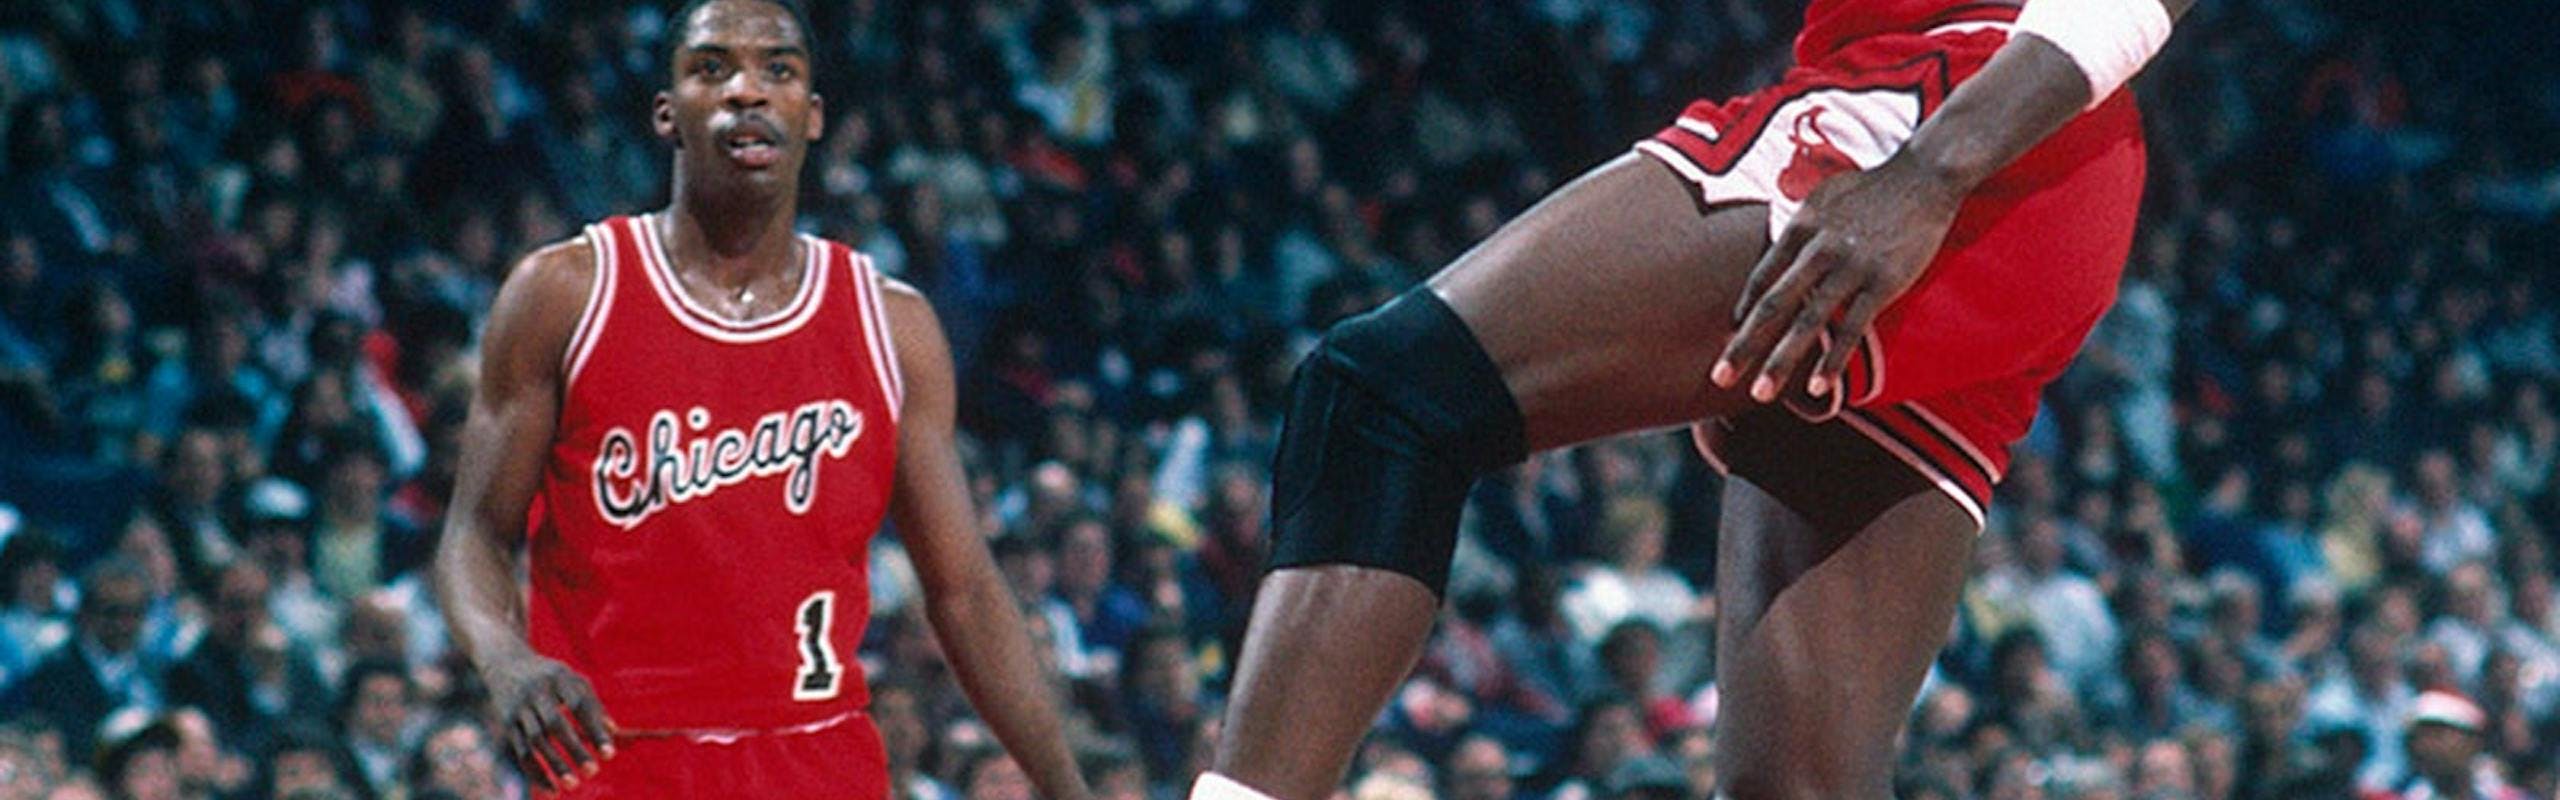 Michael Jordan playing basketball.